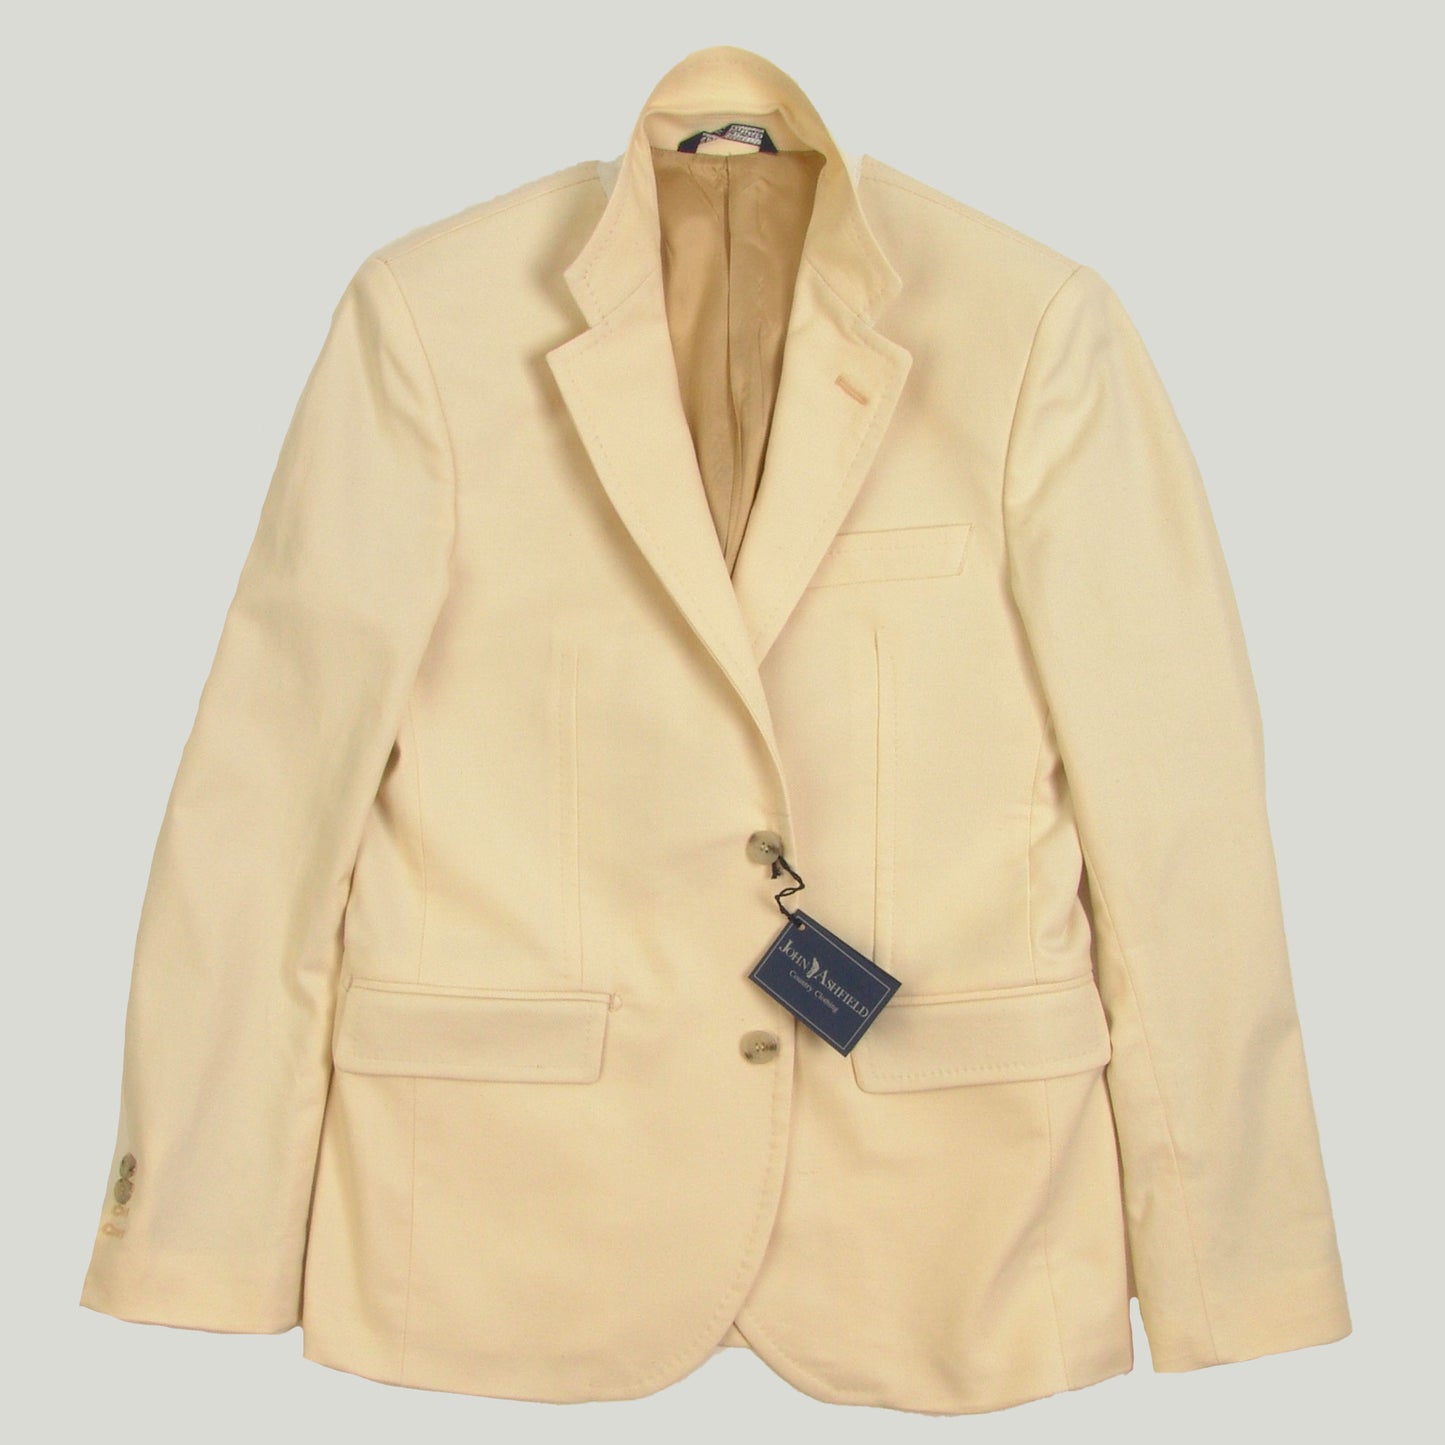 Men's Two-Button Cotton Jacket